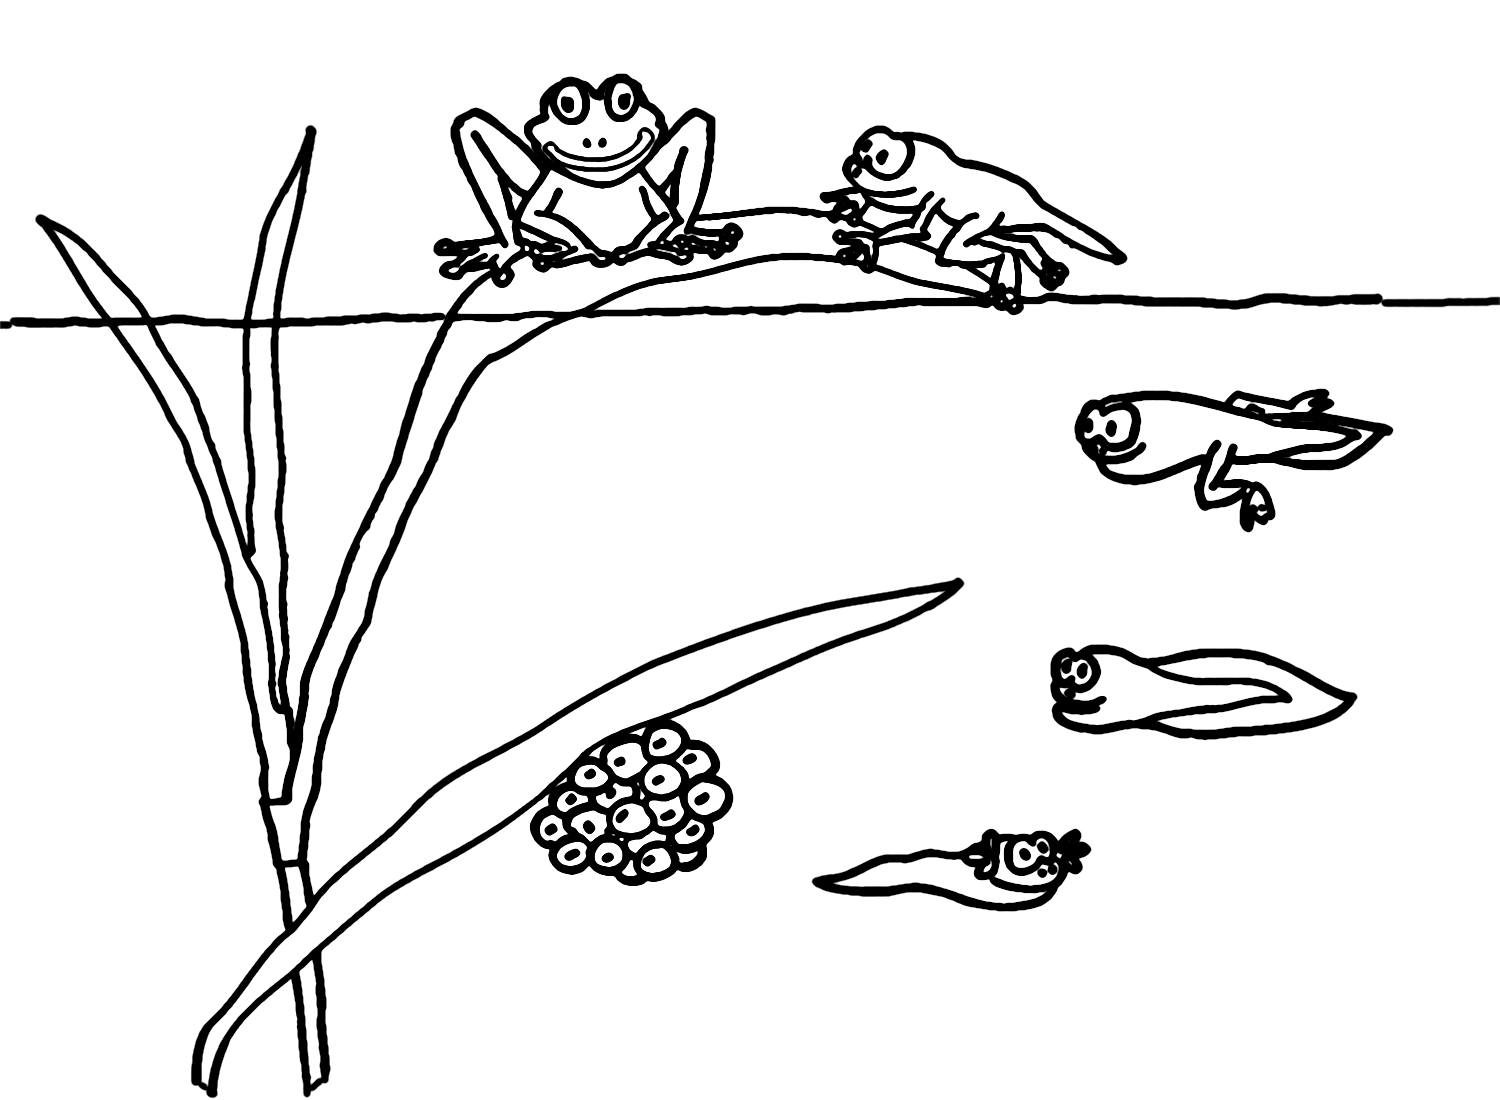 Lebenszyklus der Froschkaulquappe von der Kaulquappe